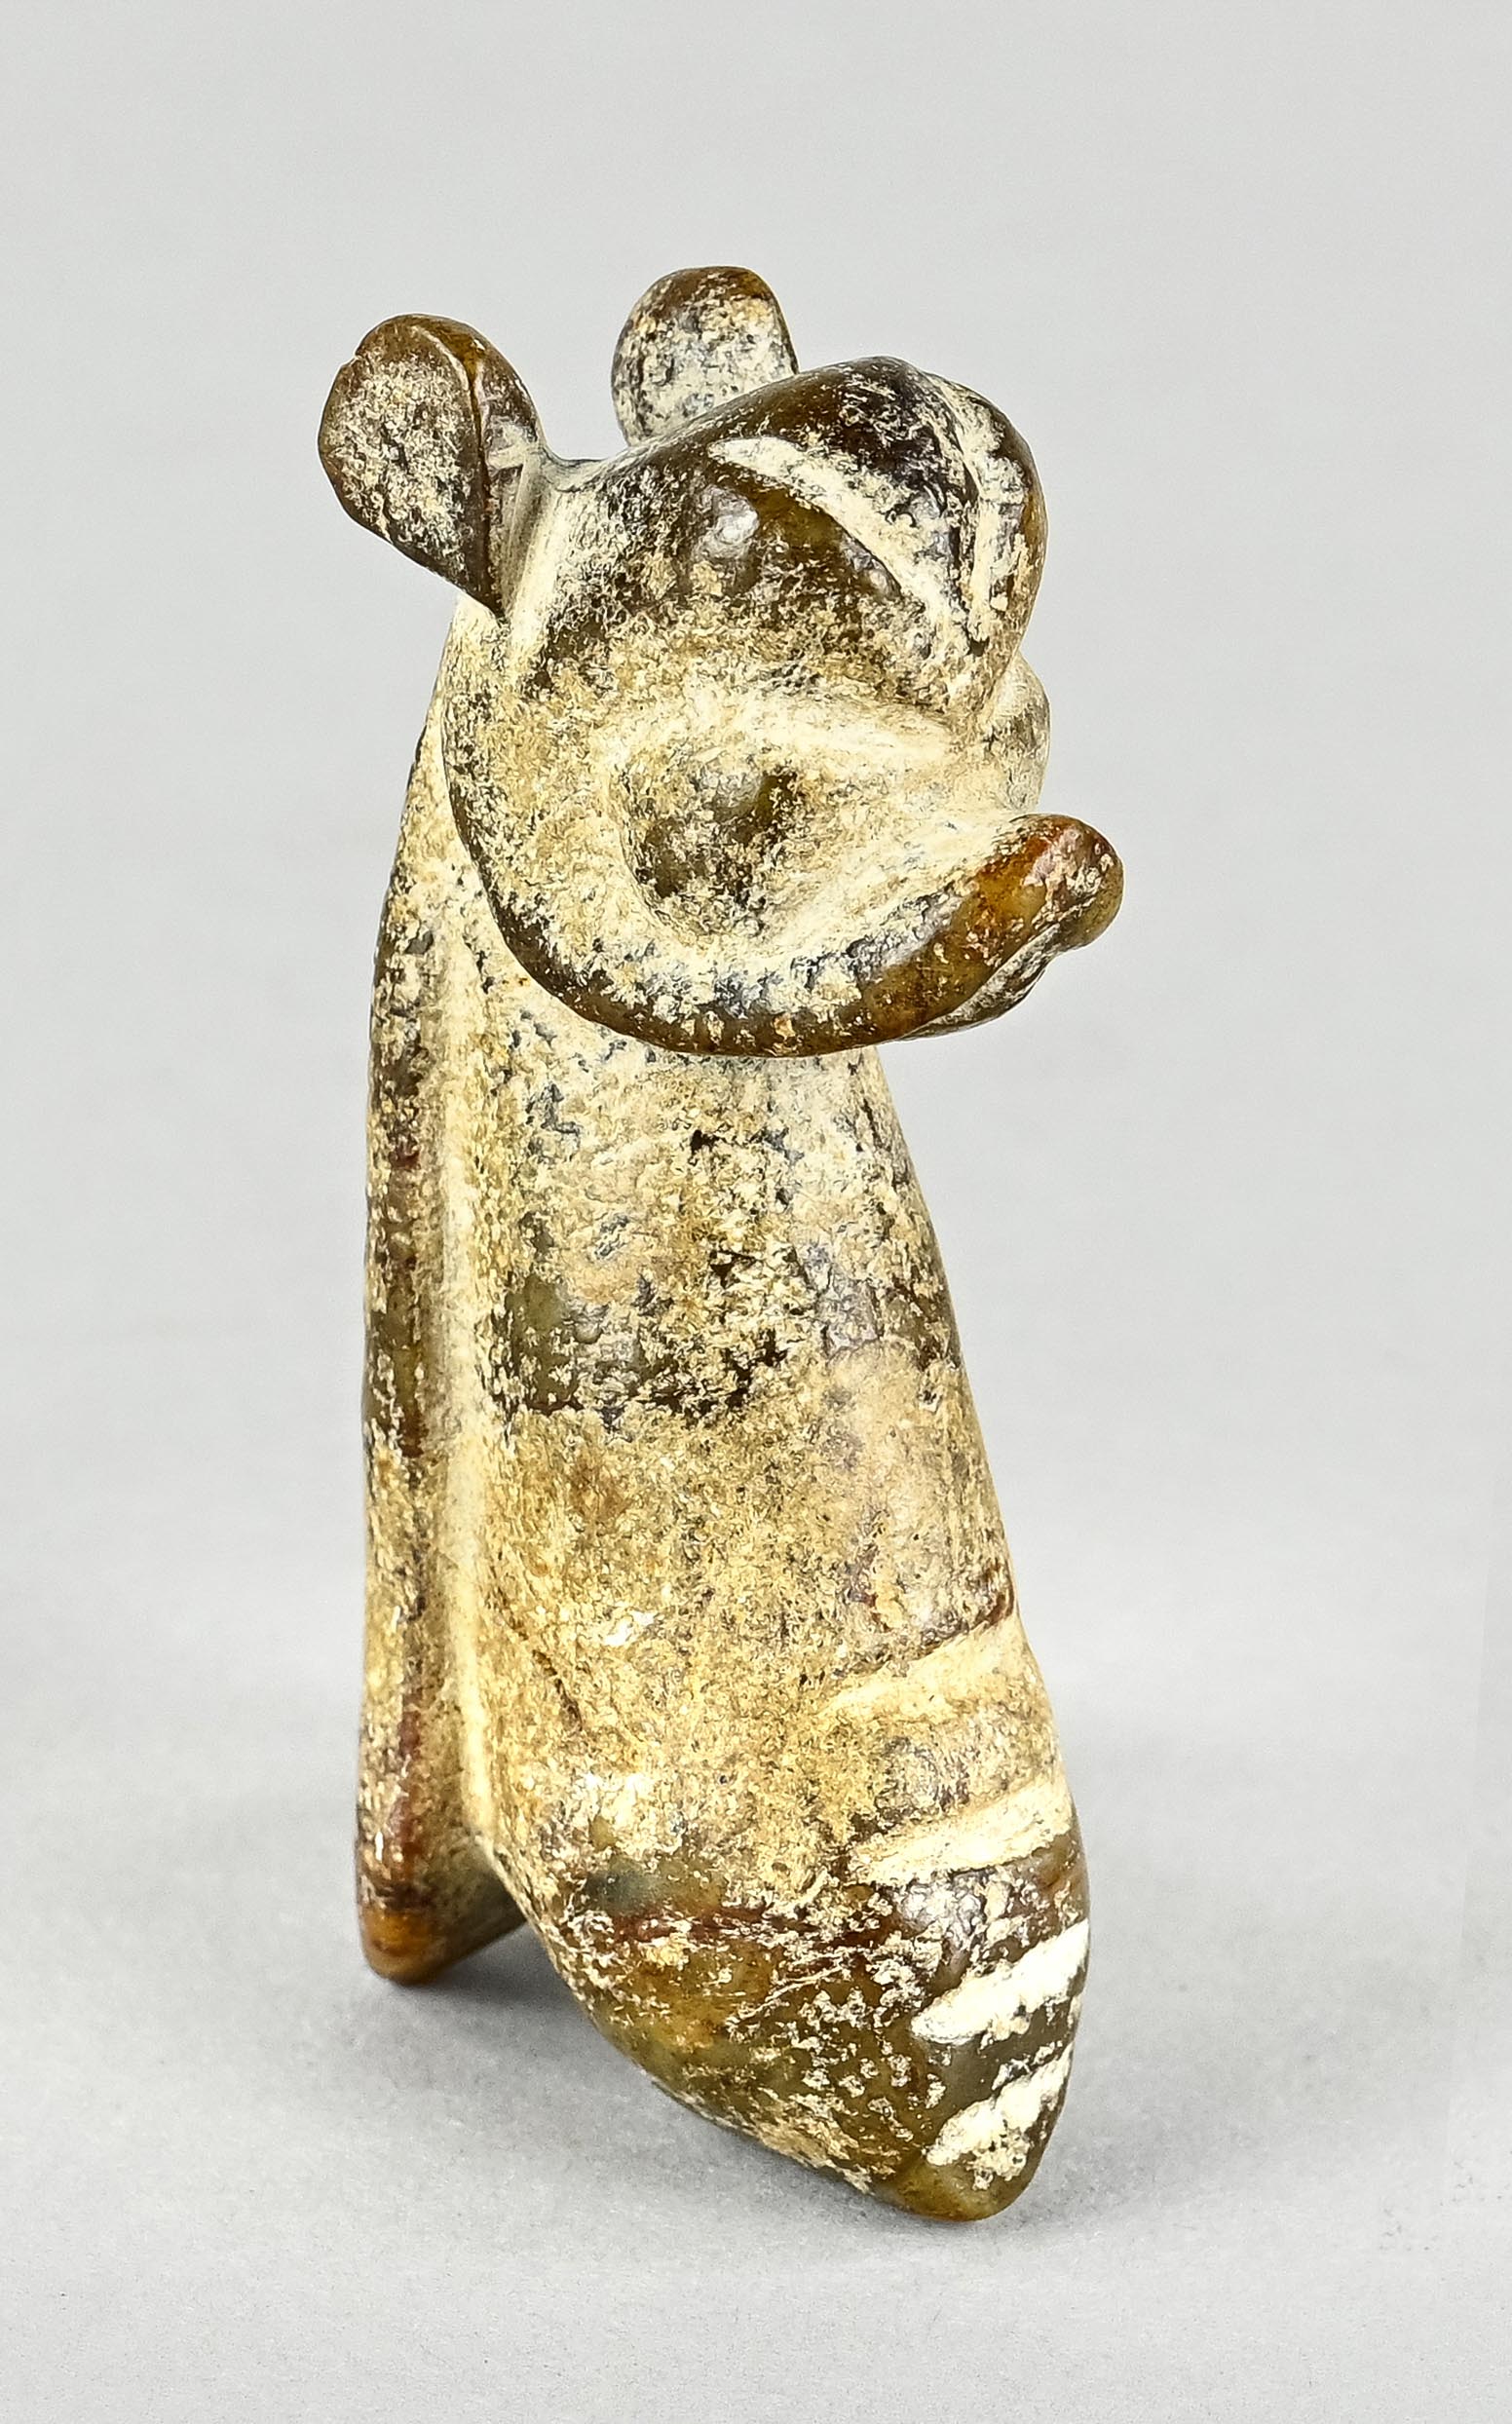 Hongshang Amulett, Fantasiefigur, Tier ähnlich, Jade mit Patina, China, Höhe 9 cm